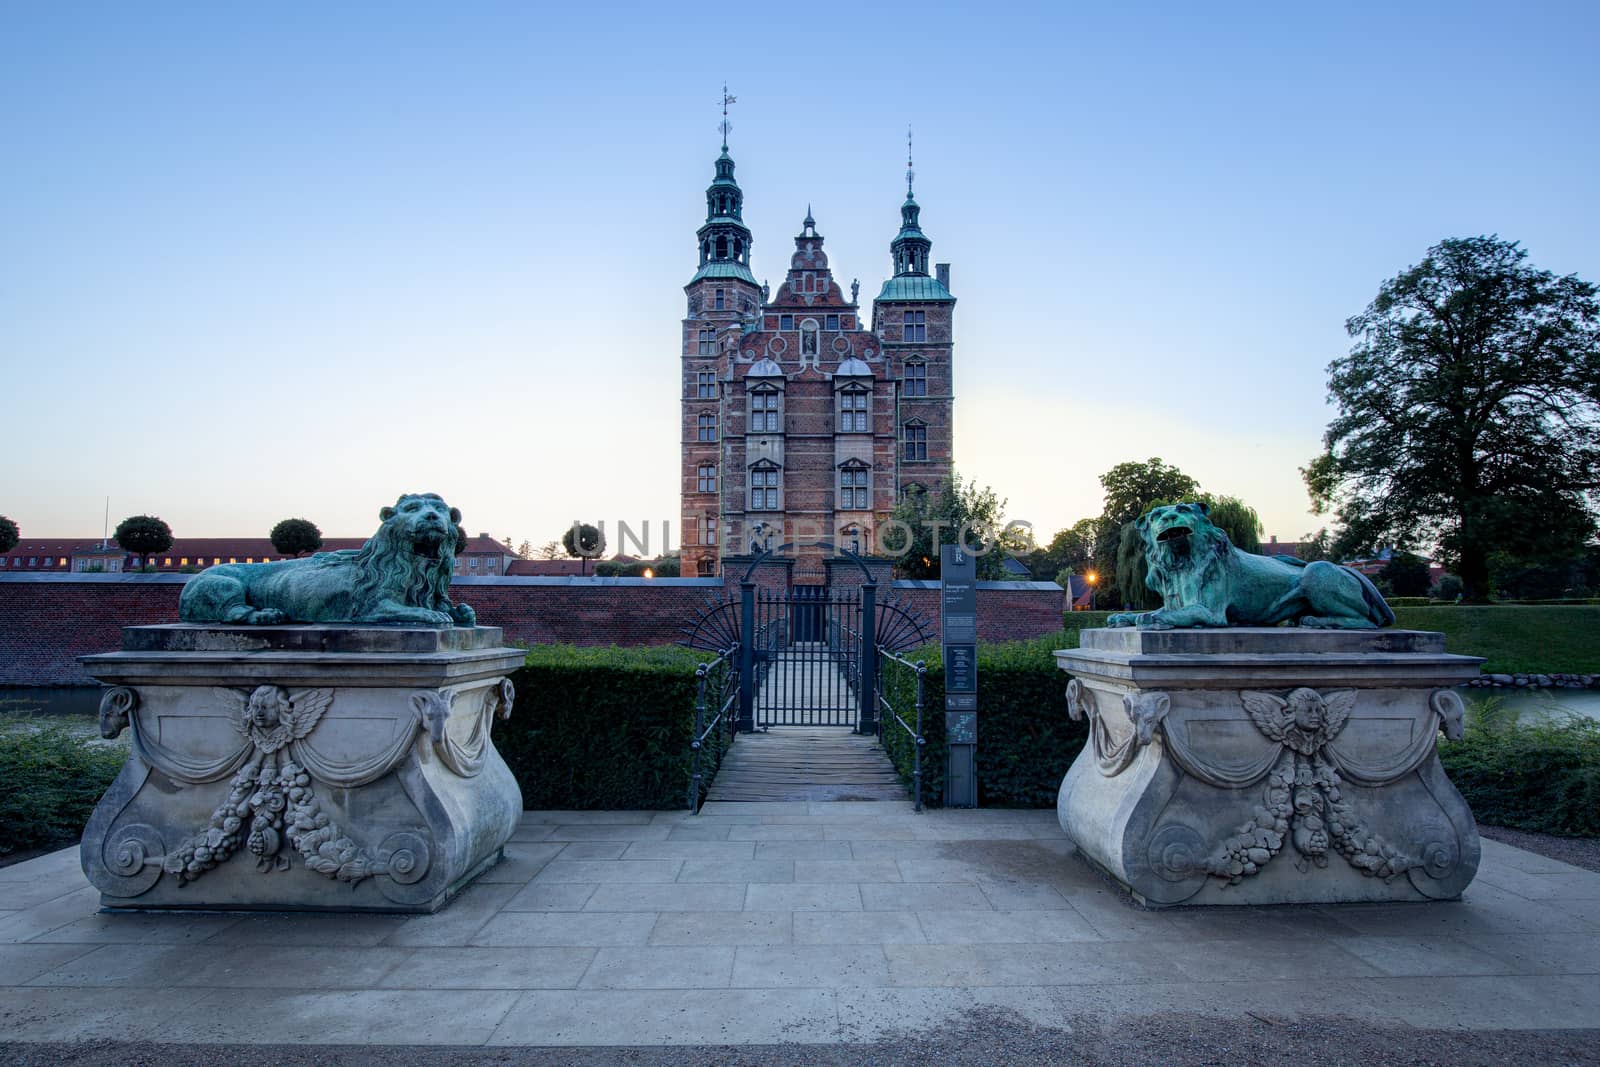 Sunset View of Rosenborg Castle in Copenhagen, Denmark by oliverfoerstner